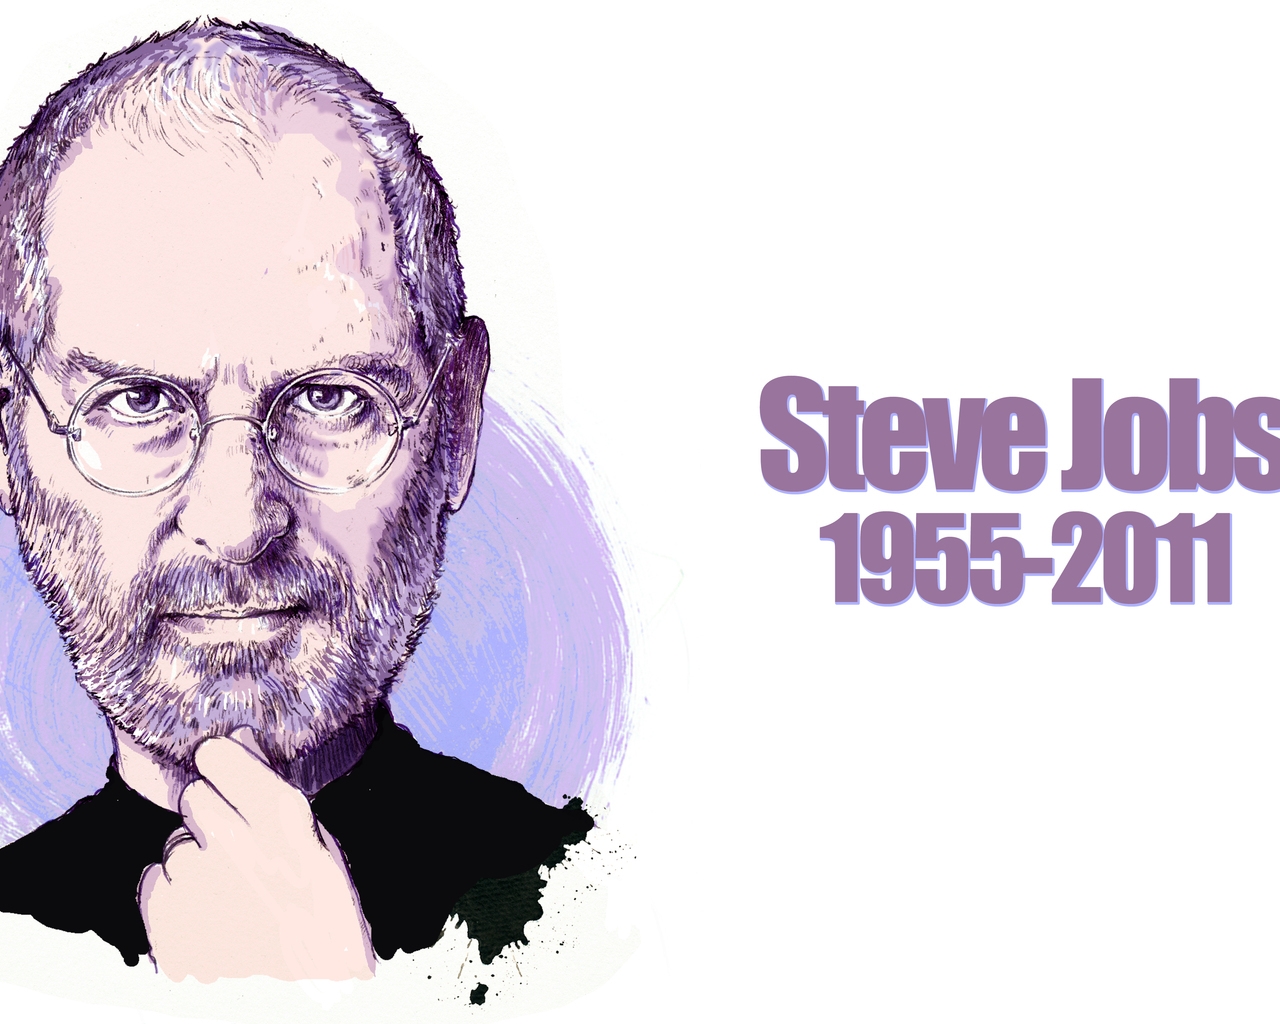 Steve Jobs Portrait for 1280 x 1024 resolution